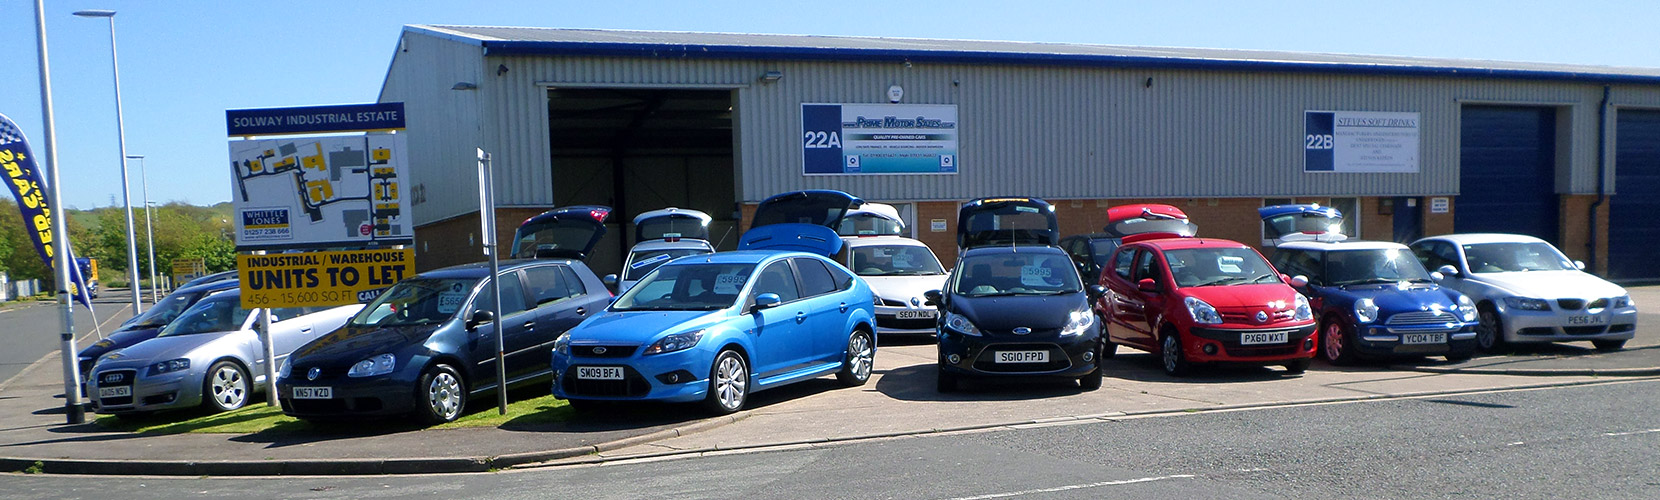 Prime Motor Sales Maryport Cumbria